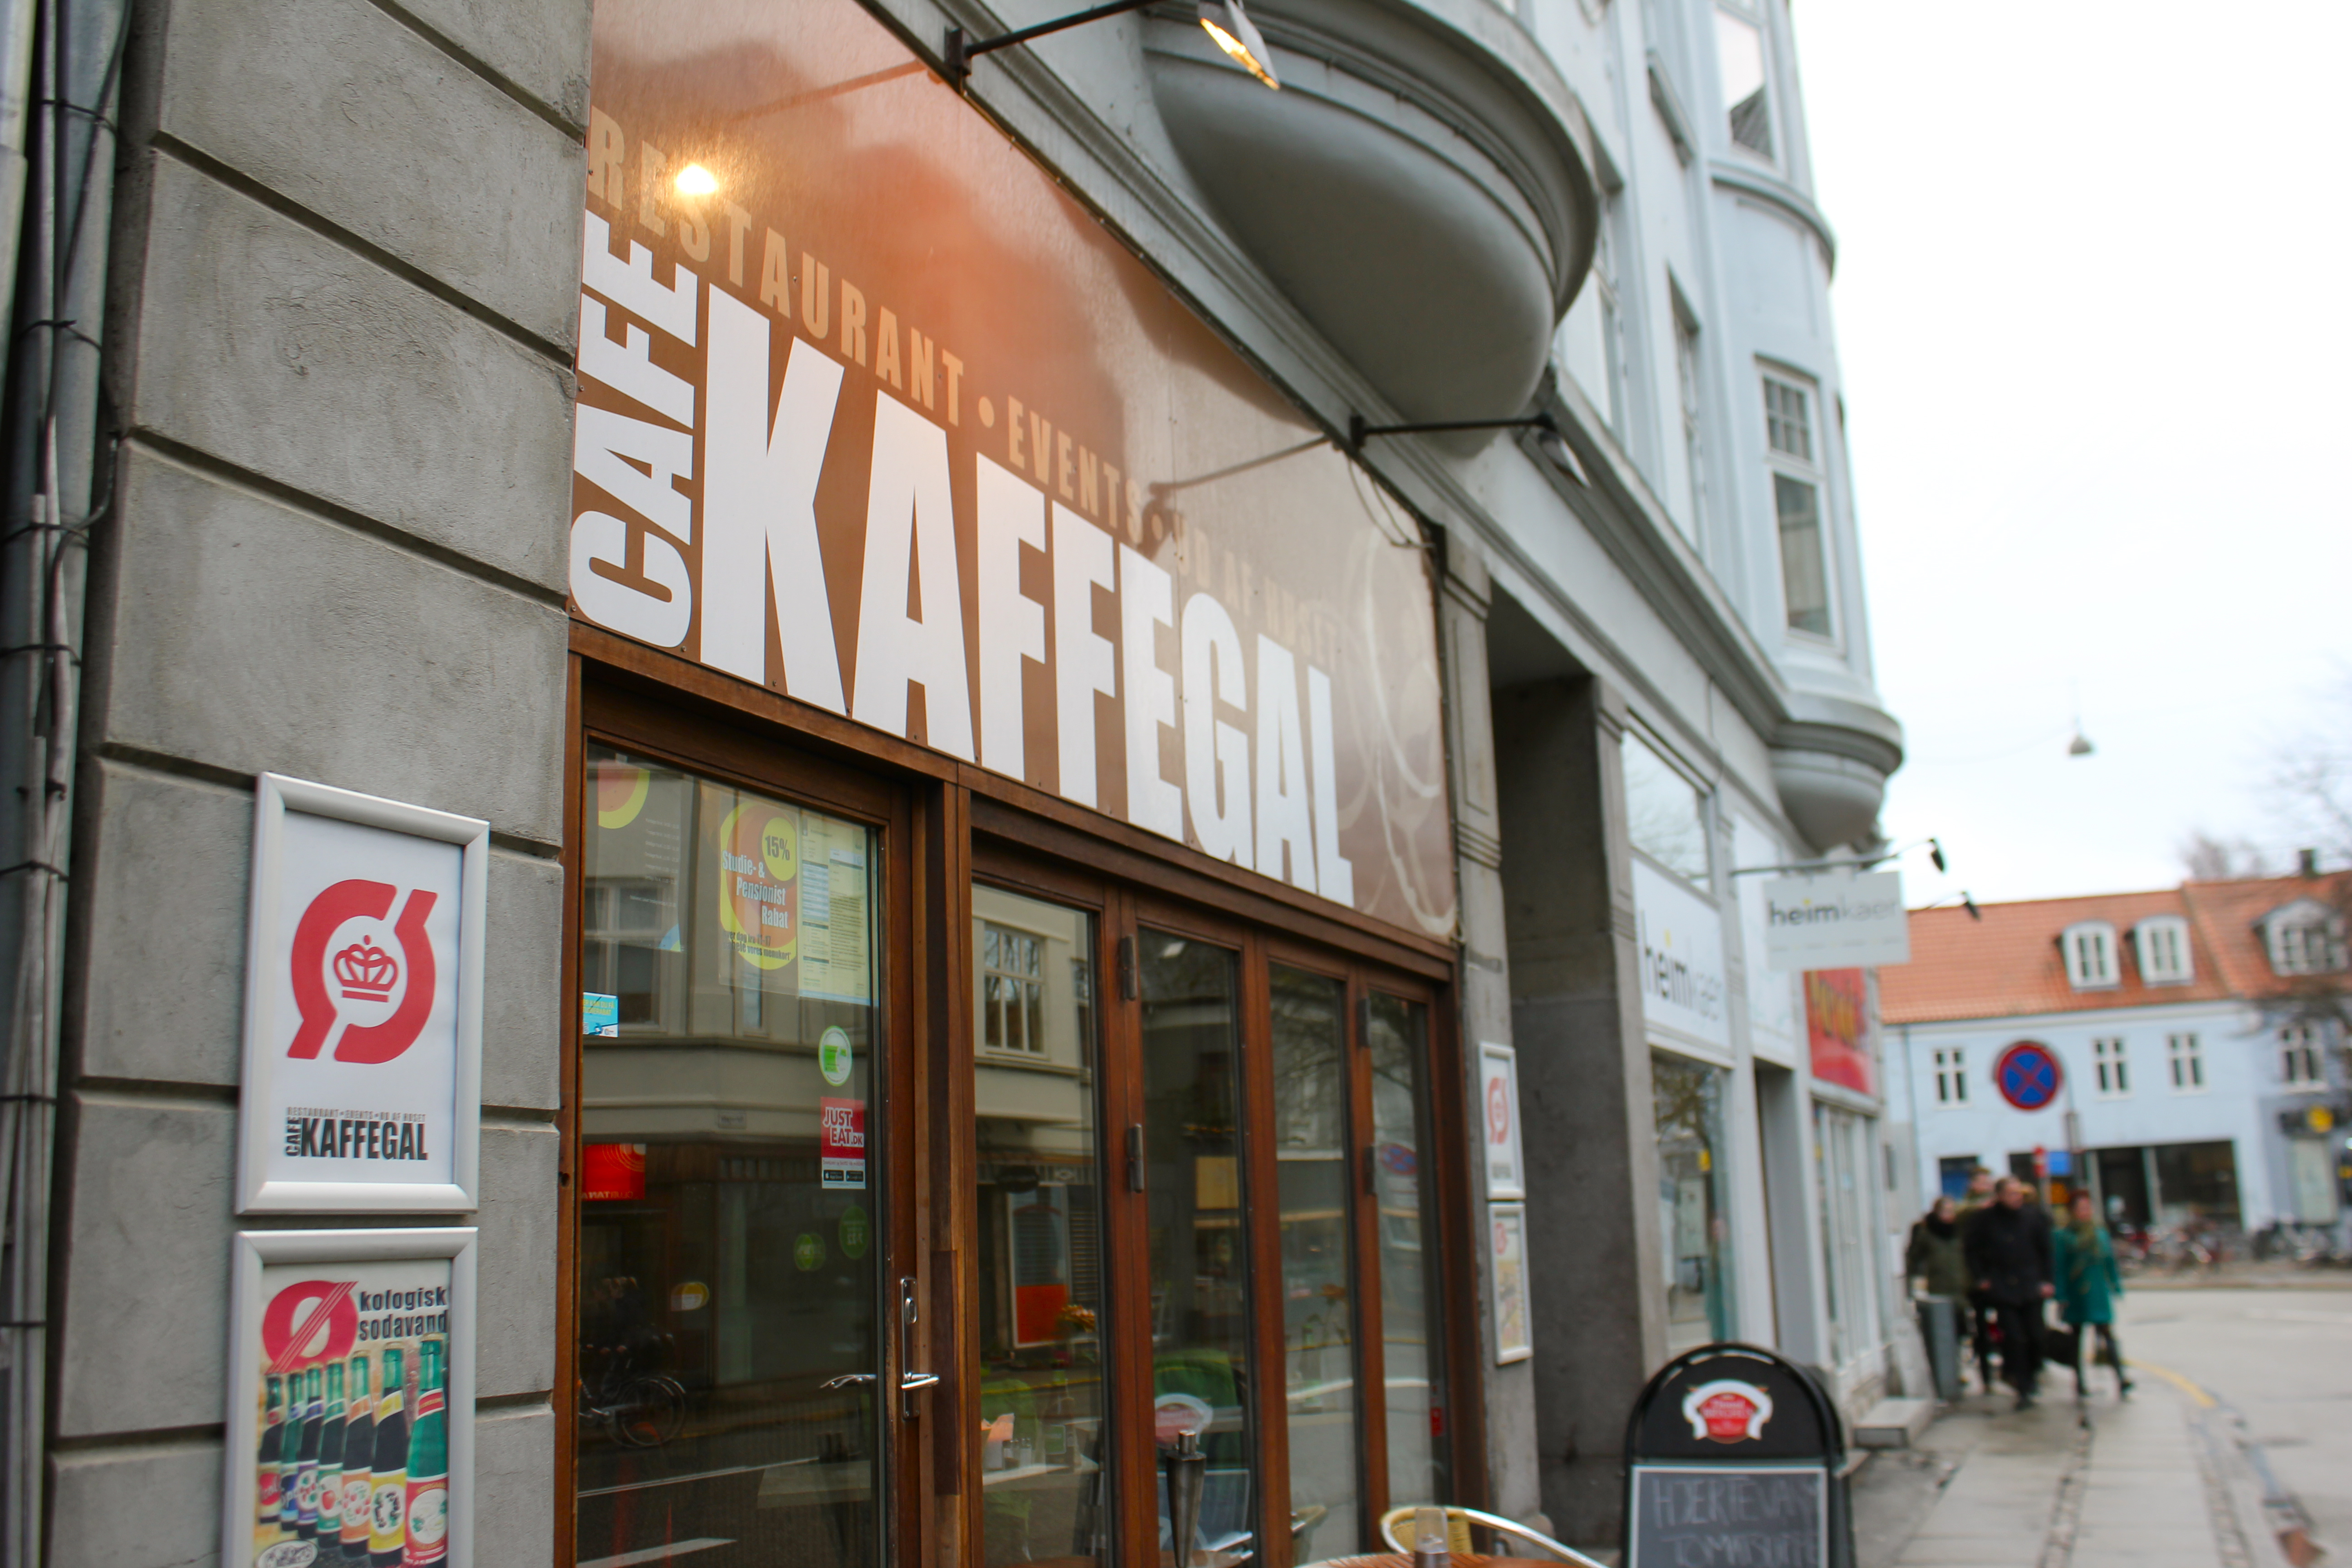 Cafe Kaffegal i Aarhus har studierabat igennem Studiz